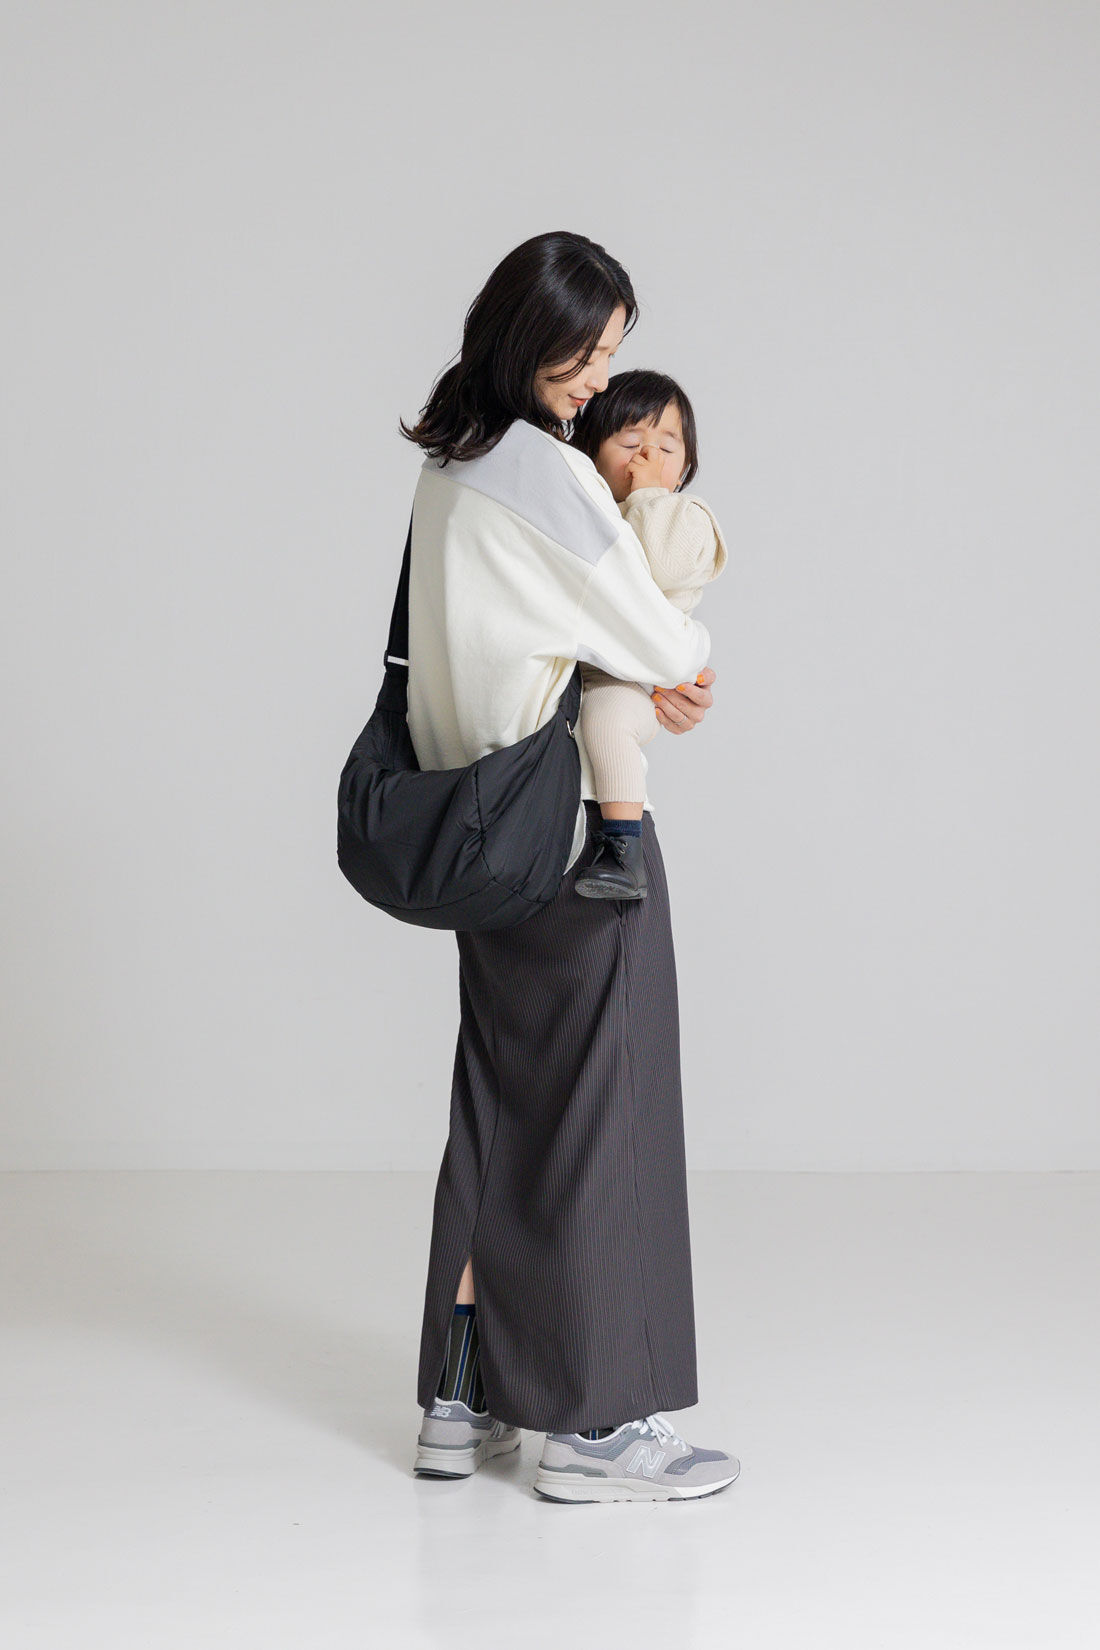 フェリシモMama|［Mama select］からだに沿う　二部屋仕様のやわらかショルダーバッグ〈ブラック〉|赤ちゃんを抱っこするママの背中に寄り添う、ちょうどよい大きさとやわらかさ